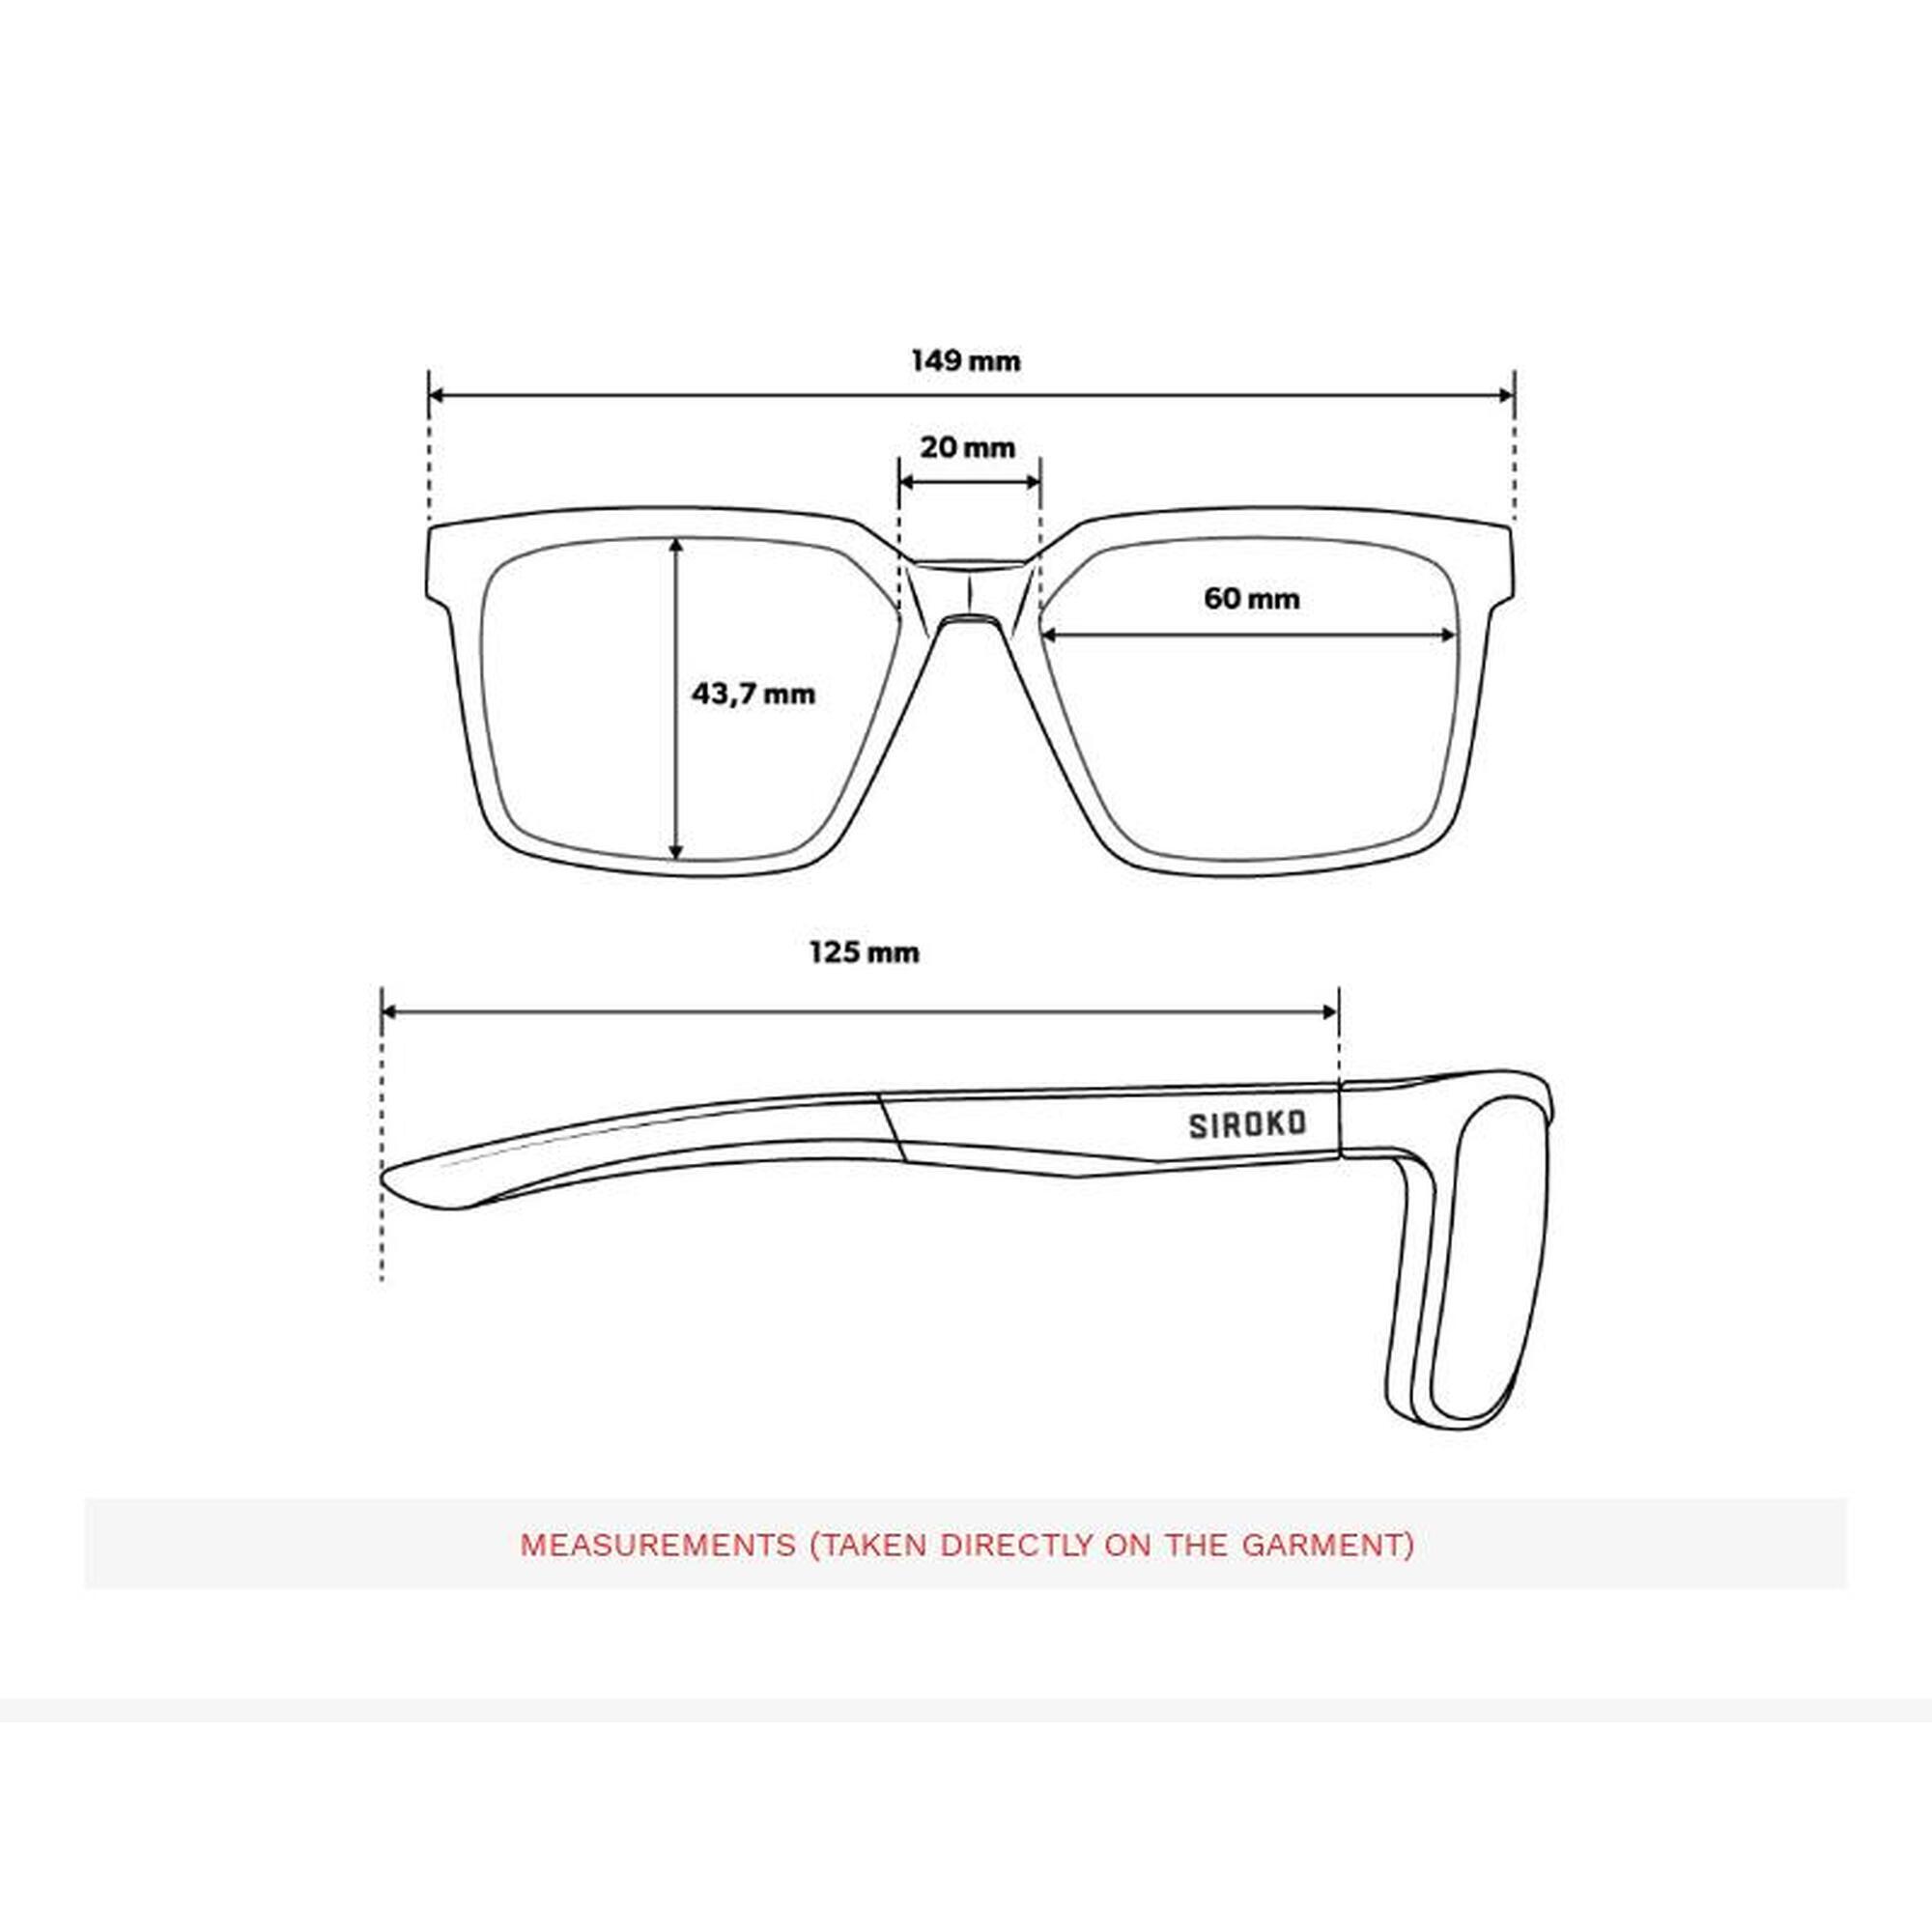 Prémiové sportovní fotochromatické brýle X1 Ottaw